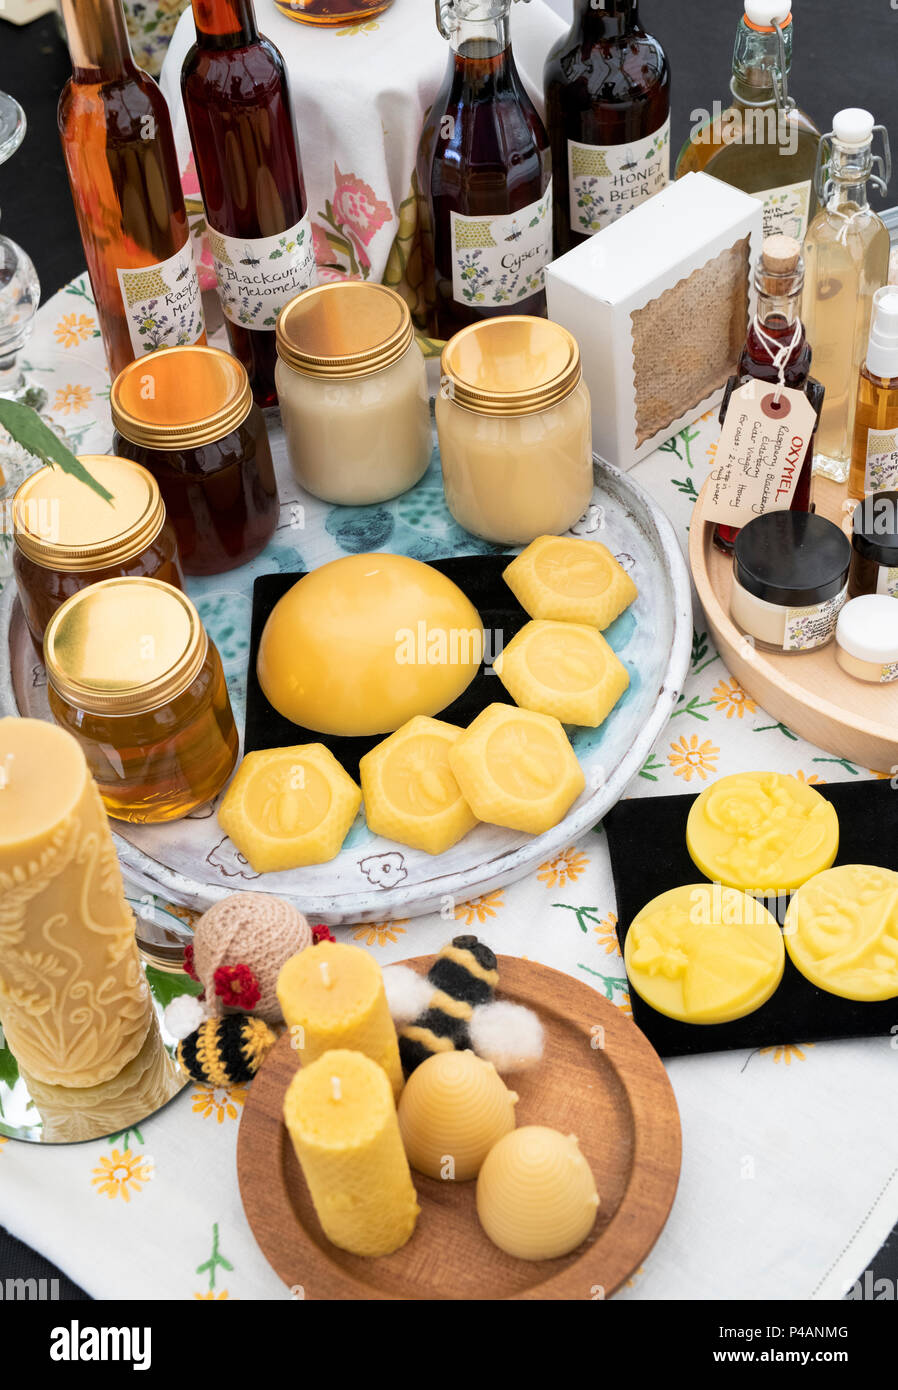 Bienen Wachs Produkte und Gläser Honig eine Landwirtschaft zeigen. Großbritannien Stockfoto